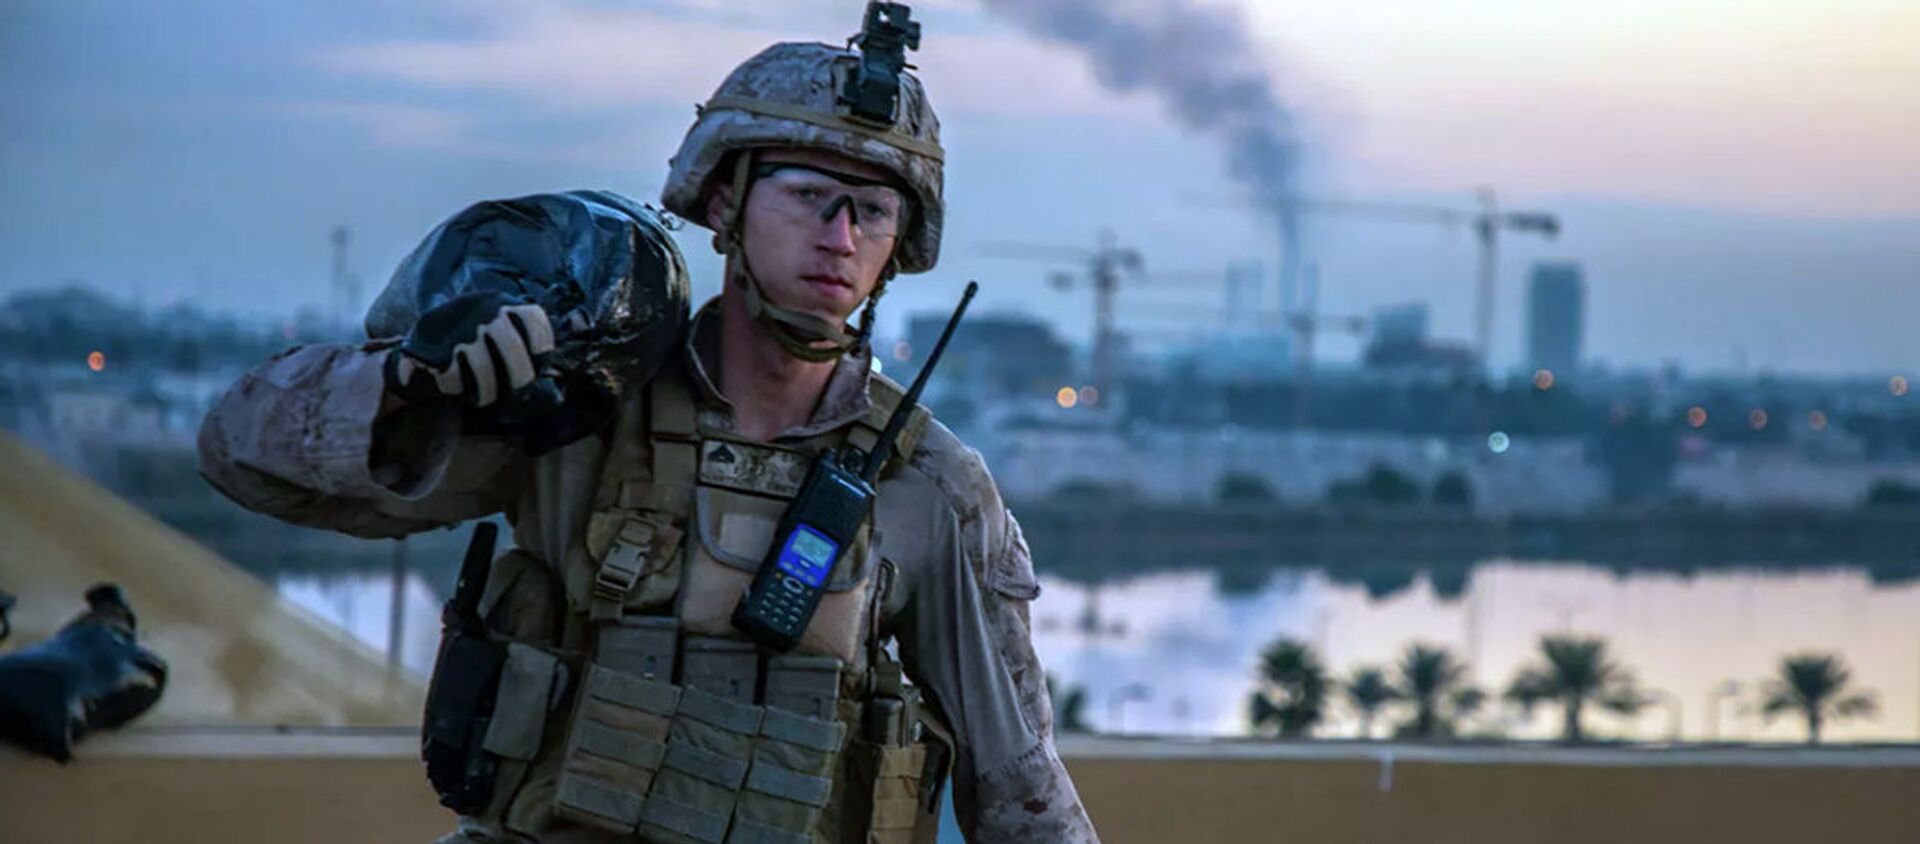 Американский морской пехотинец на территории посольства США в Багдаде, Ирак. 4 января 2019 - Sputnik Ўзбекистон, 1920, 01.09.2020